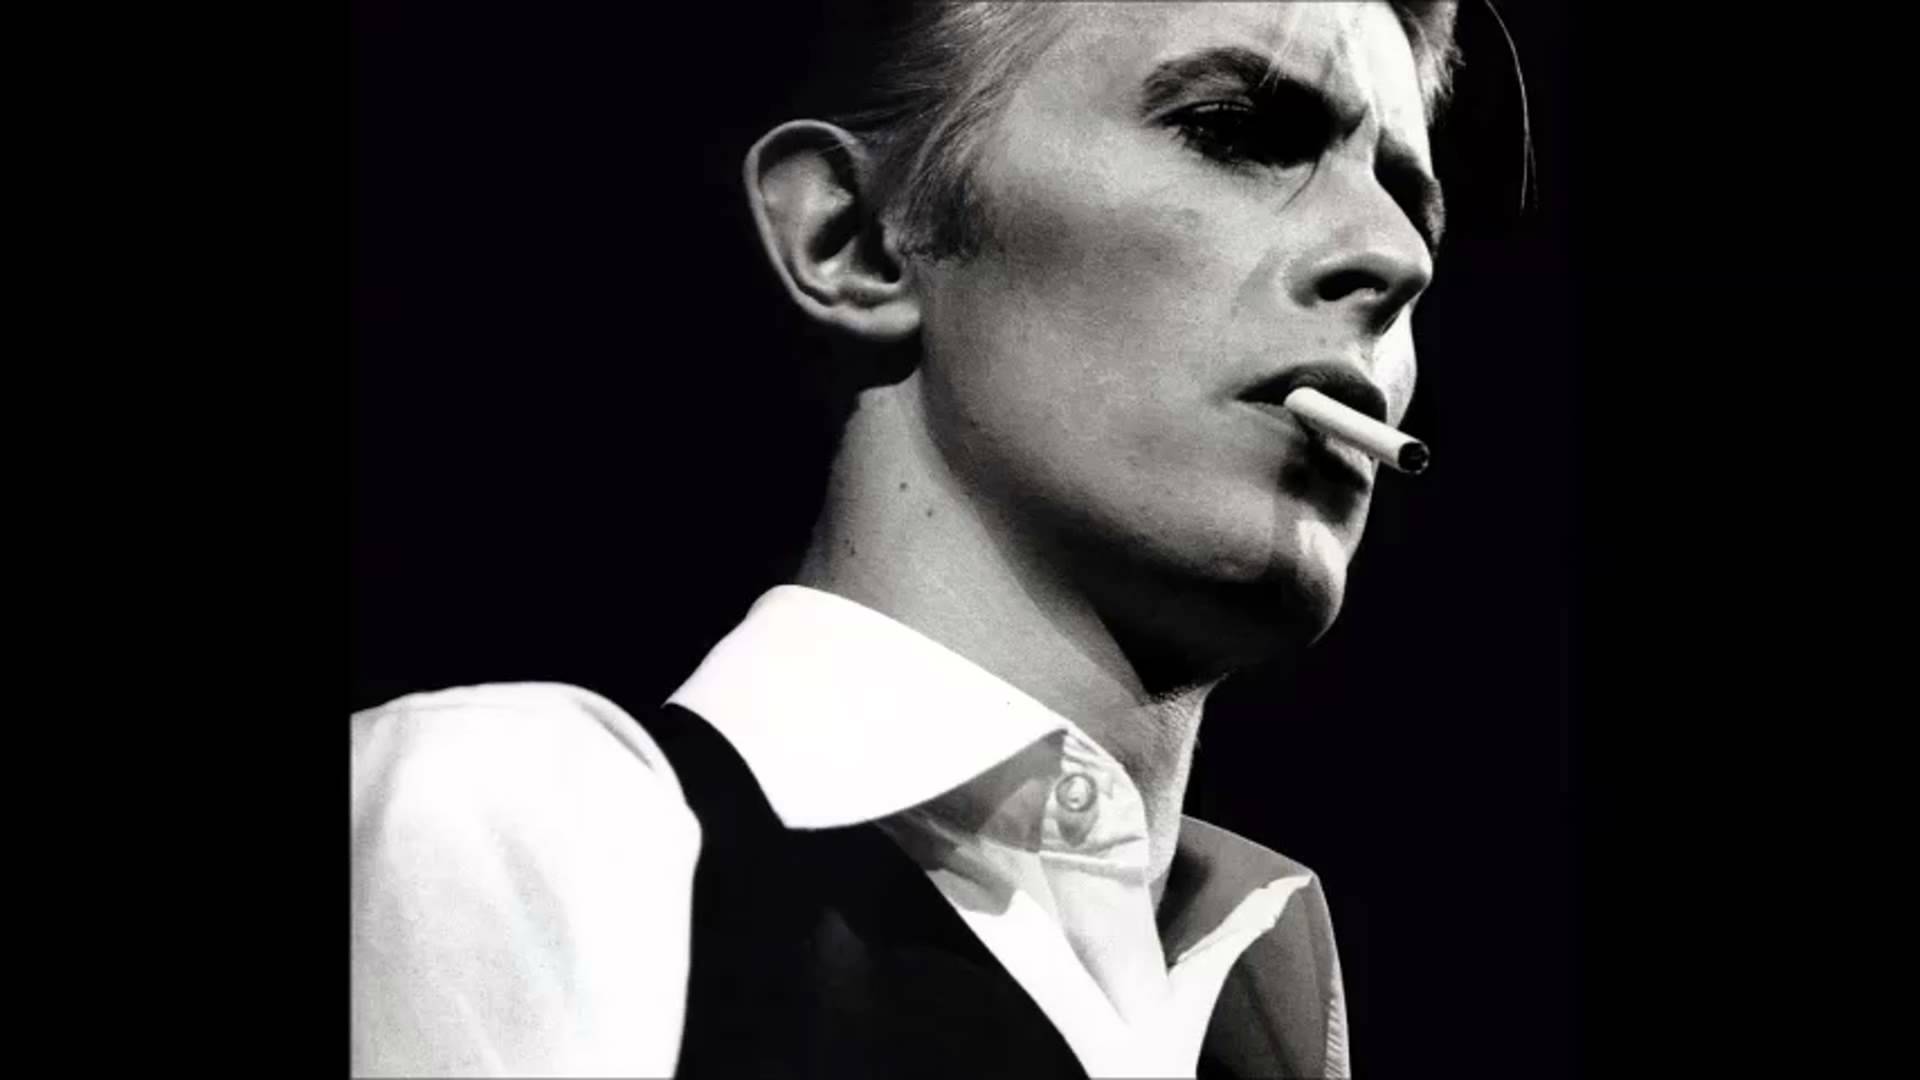 La historia musical de Bowie en vídeos que nos tocaron la mente